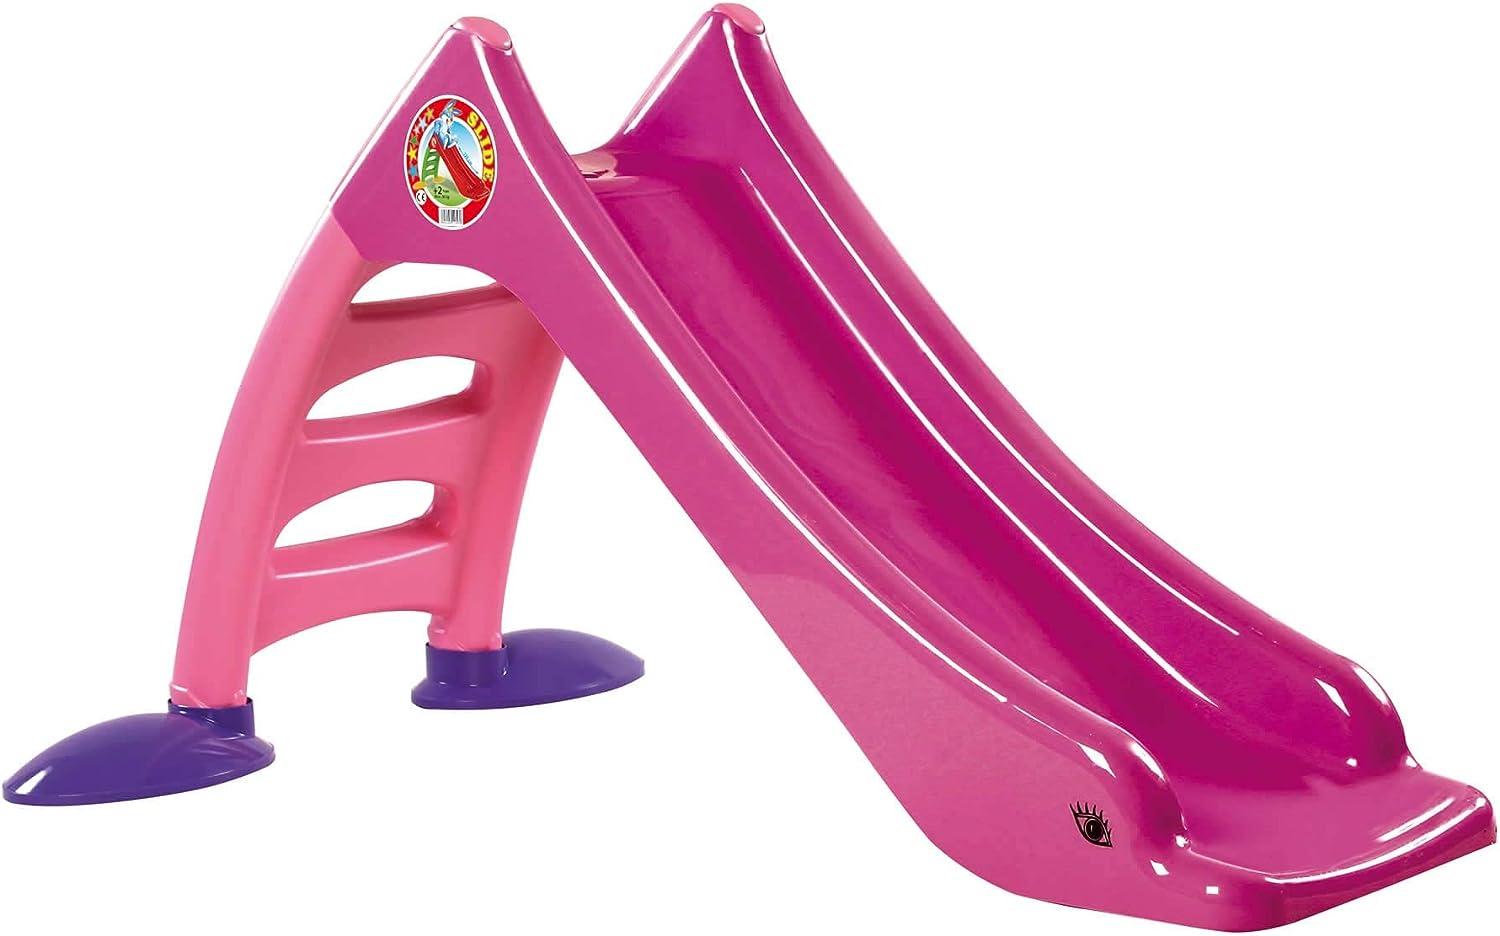 Dohany 2in1 Kinderrutsche Wasserrutsche freistehend Rutschbahn Rutschlänge 120 cm (pink) Bild 1